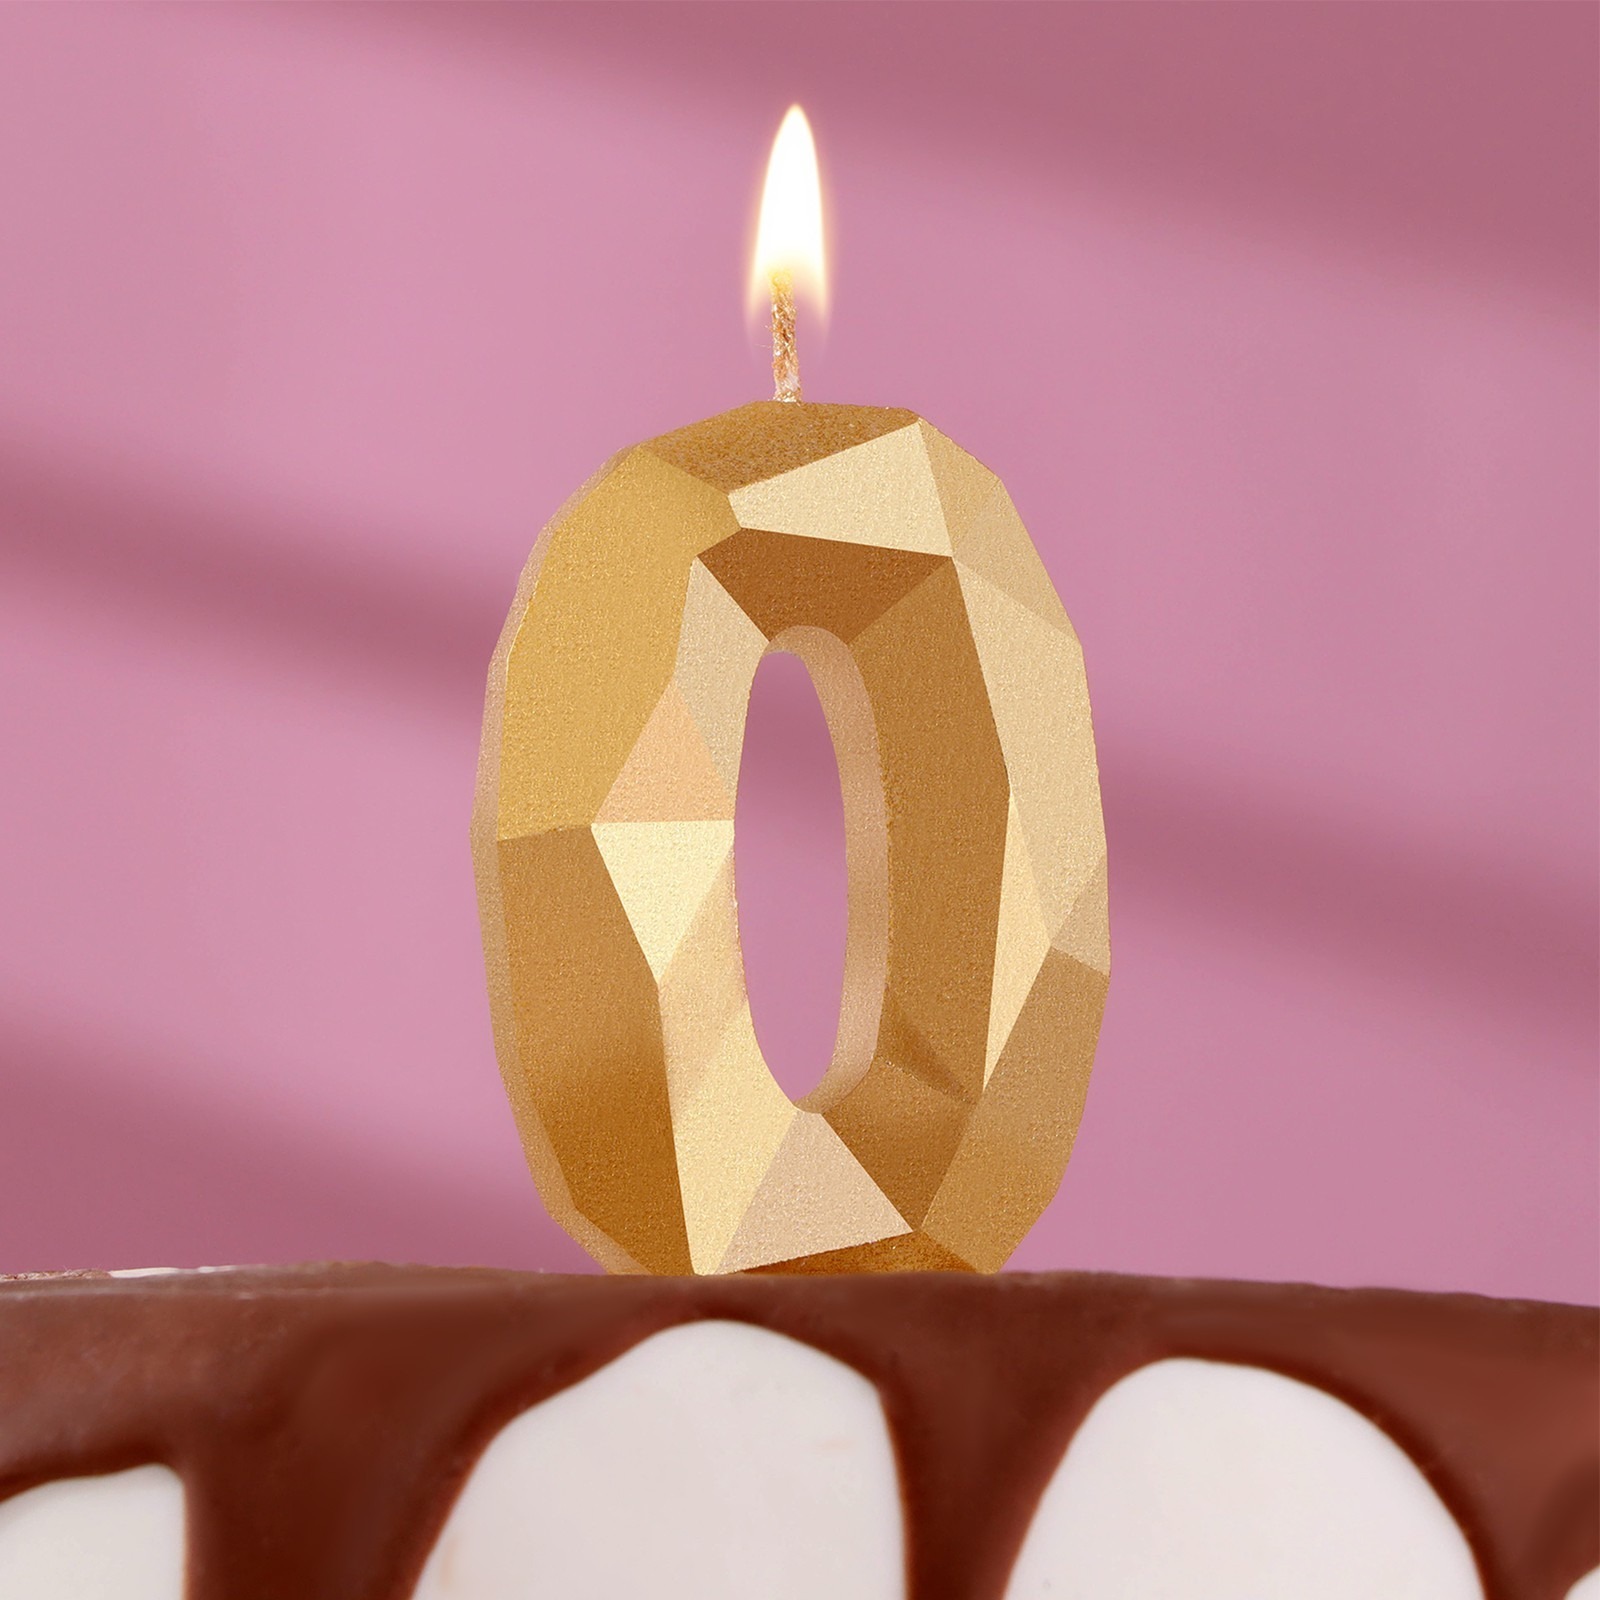 Свеча в торт Страна Карнавалия Алмаз цифра 0 свечи незадуваемые в торт